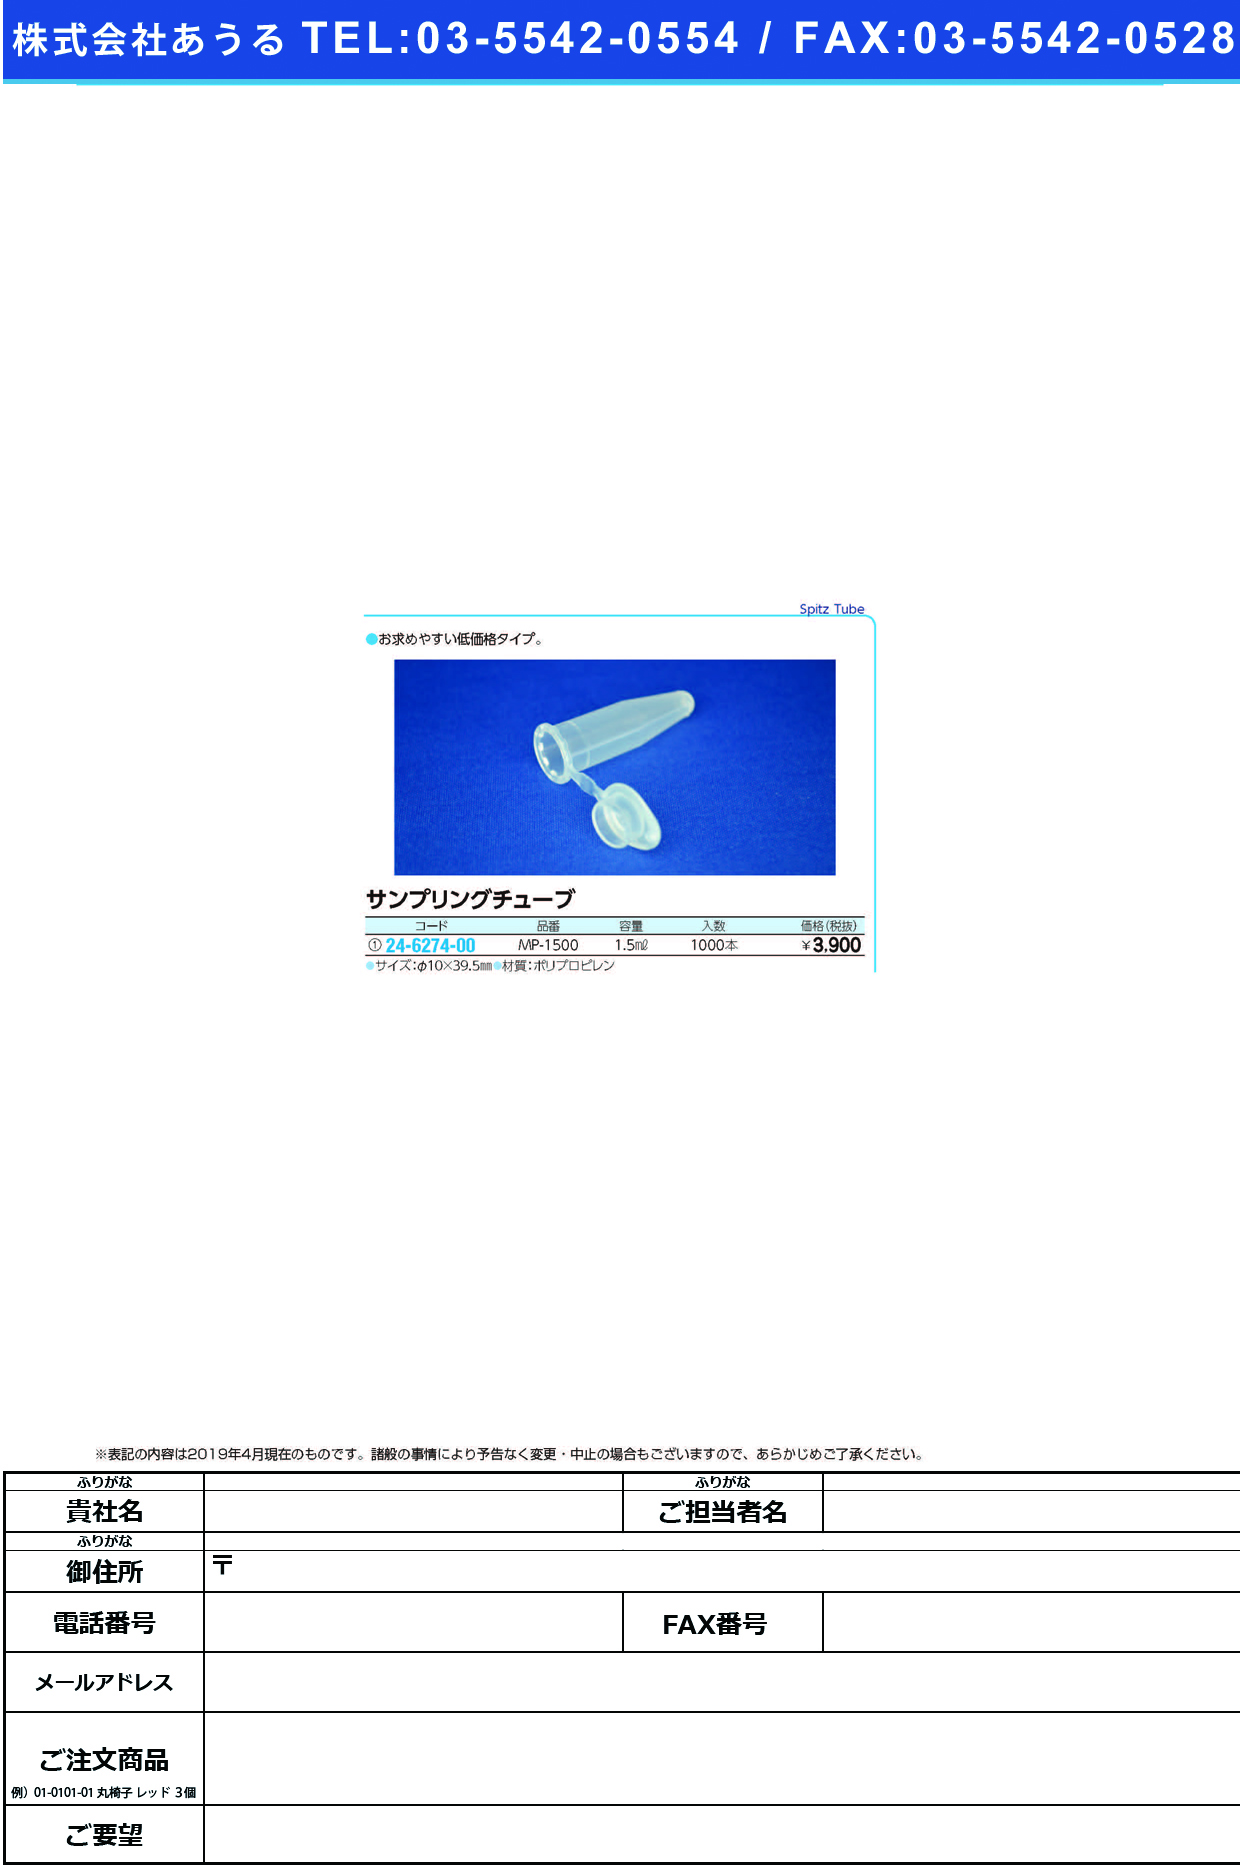 (24-6274-00)サンプリングチューブ MP-1500(1000ﾎﾞﾝ) ｻﾝﾌﾟﾘﾝｸﾞﾁｭｰﾌﾞ【1箱単位】【2019年カタログ商品】